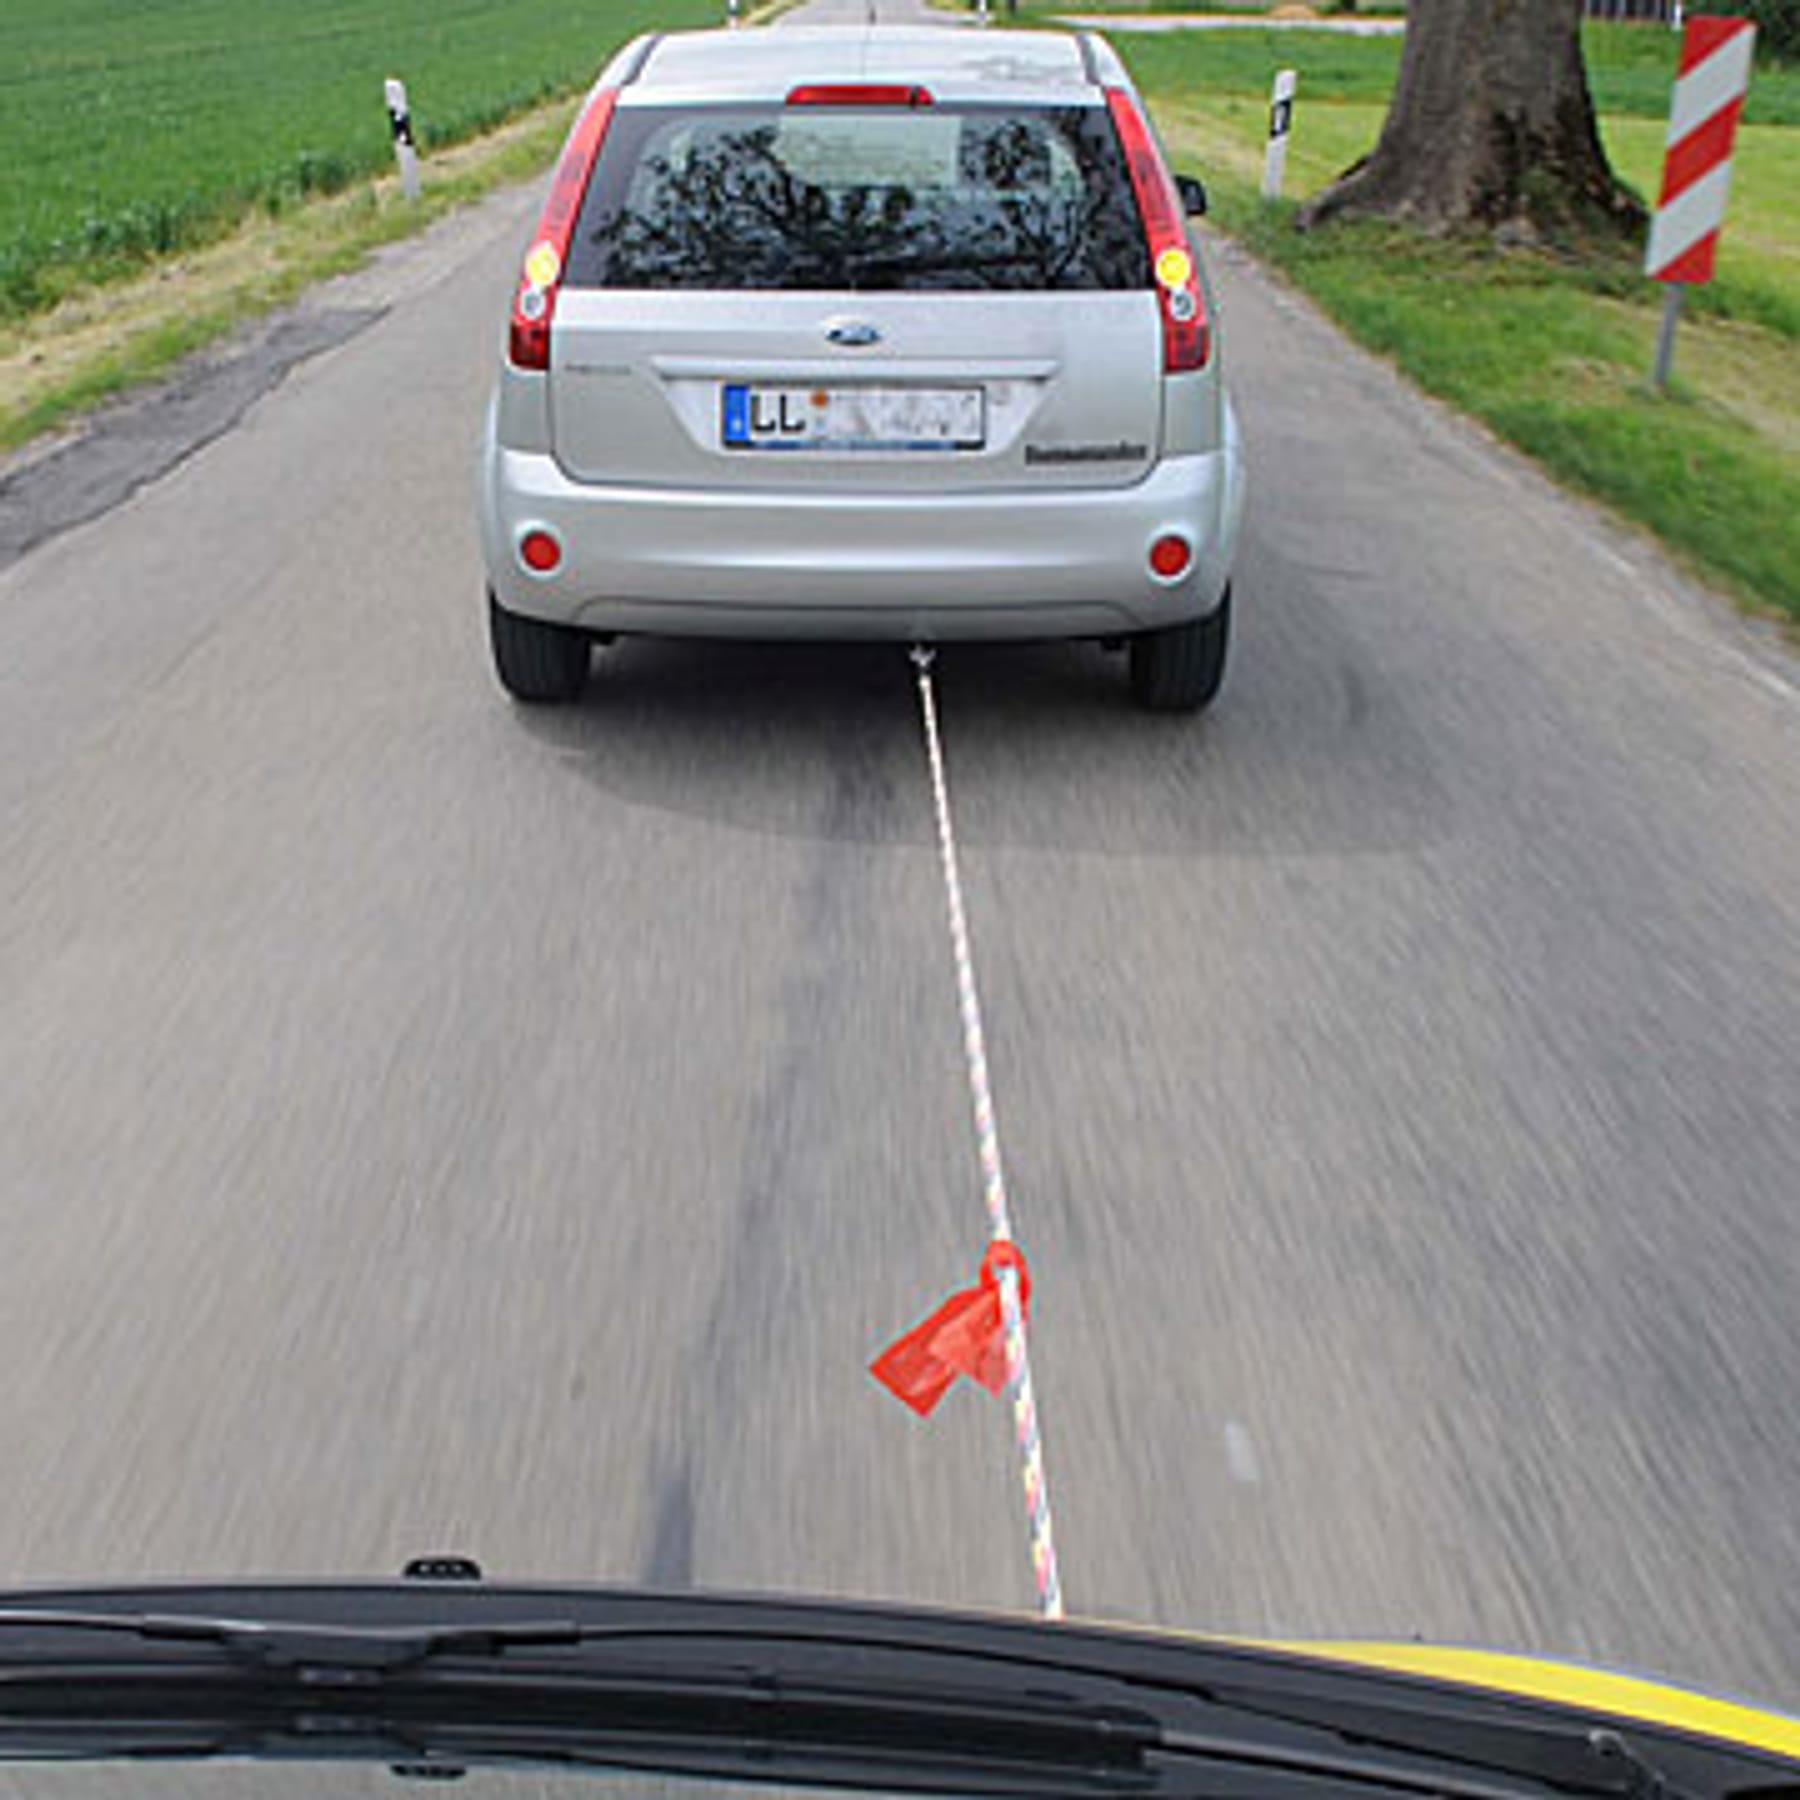 Auto mit einem Seil abschleppen: Darauf müssen Sie achten